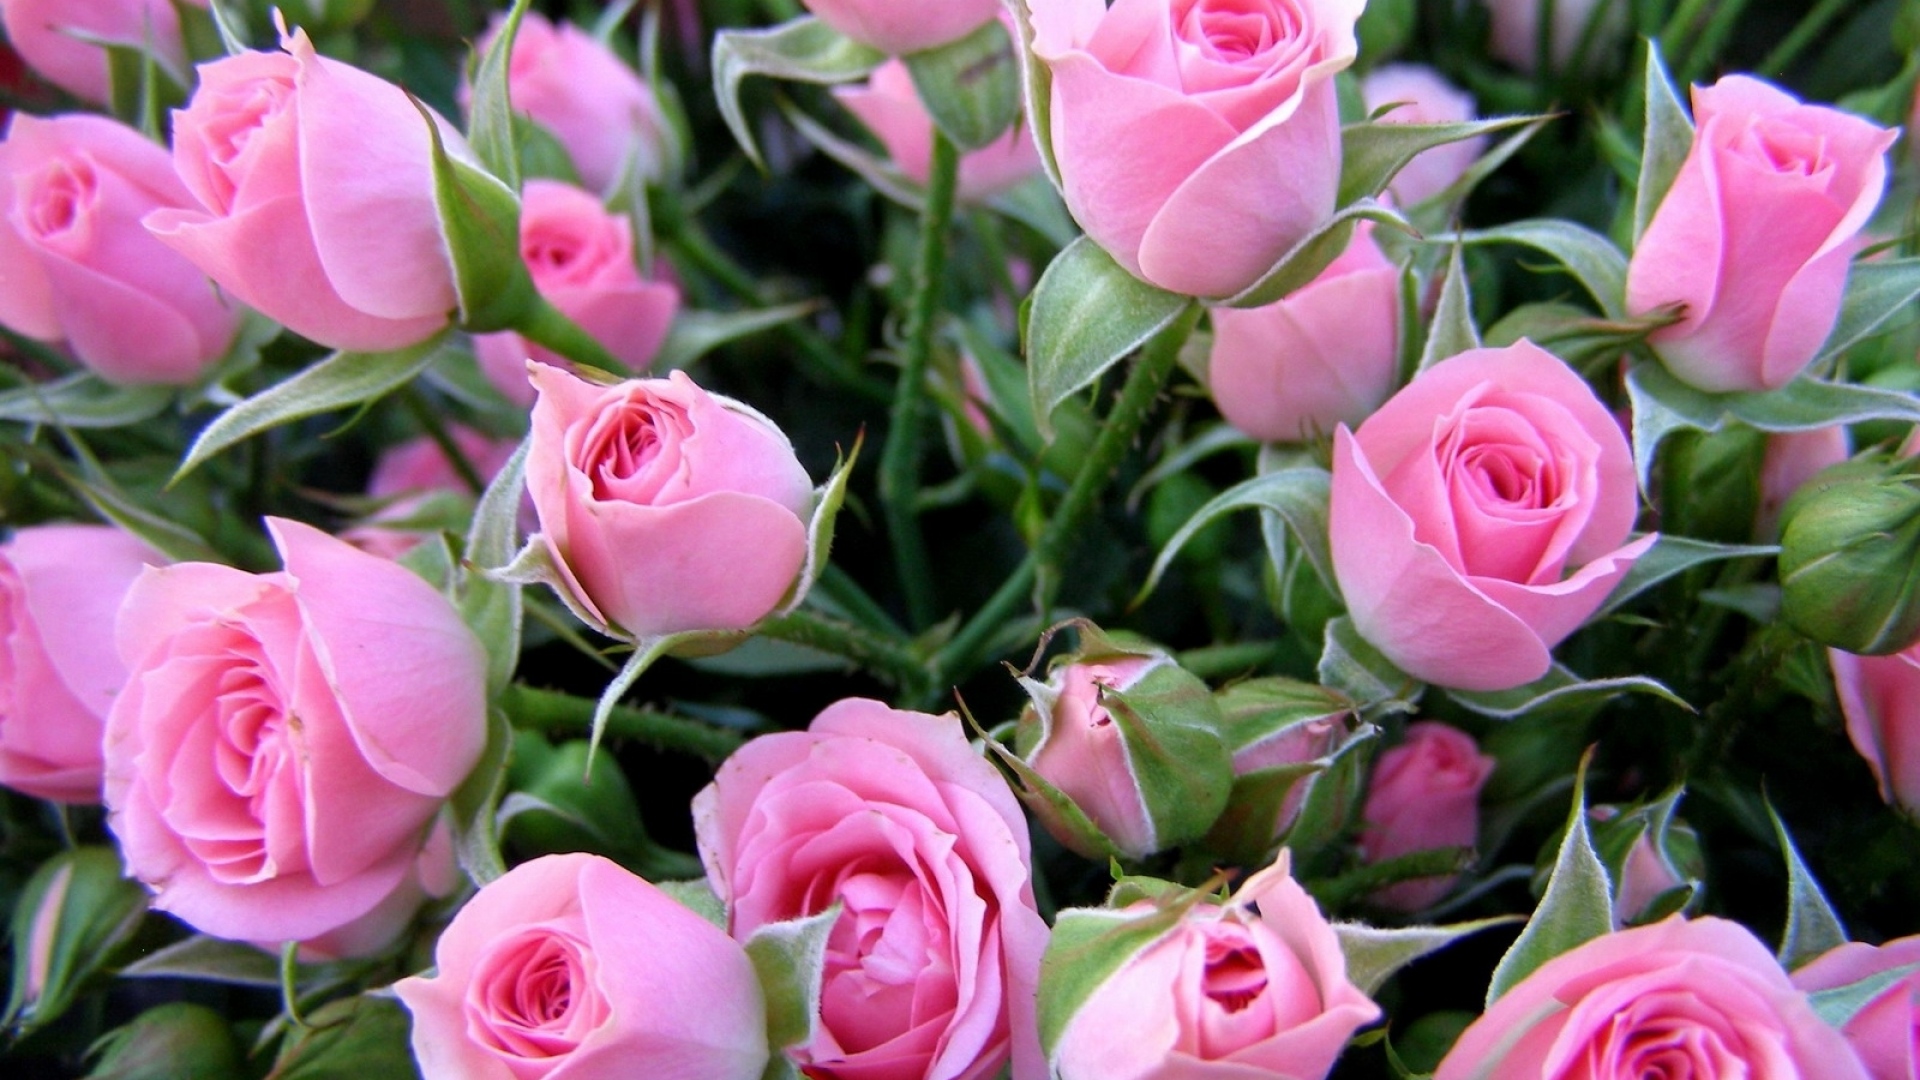 розы, цветы, букет, нежные, бутоны, весна, красивые обои, roses, flowers, bouquet, delicate, buds, spring, beautiful wallpaper